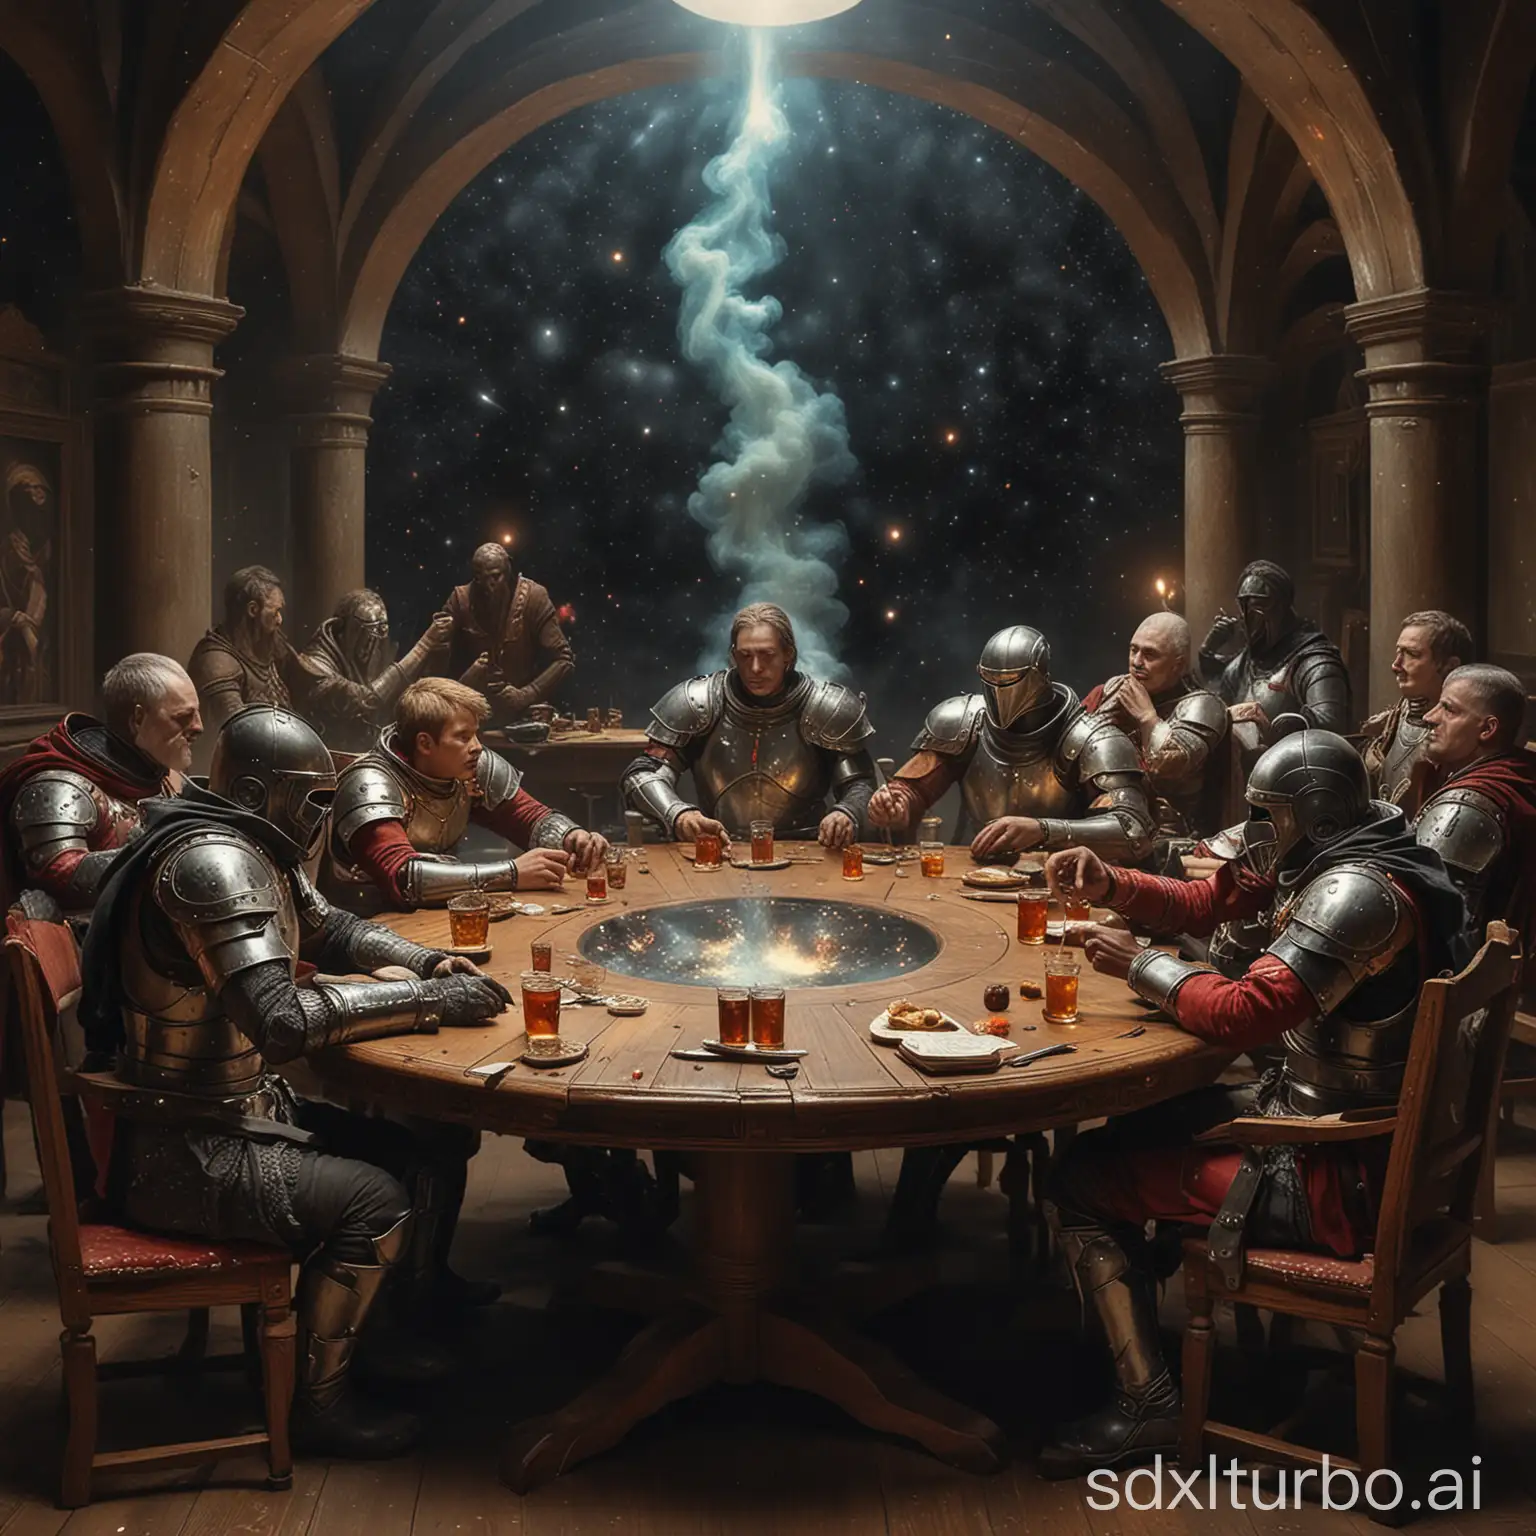 Die Ritter der Tafelrunde im Weltall, an jedem Platz ist ein Gottartiges Wesen, neben der TAfelrunde sieht man in der fern Galaxien, sie trinkenb und rauchen Mariuahan